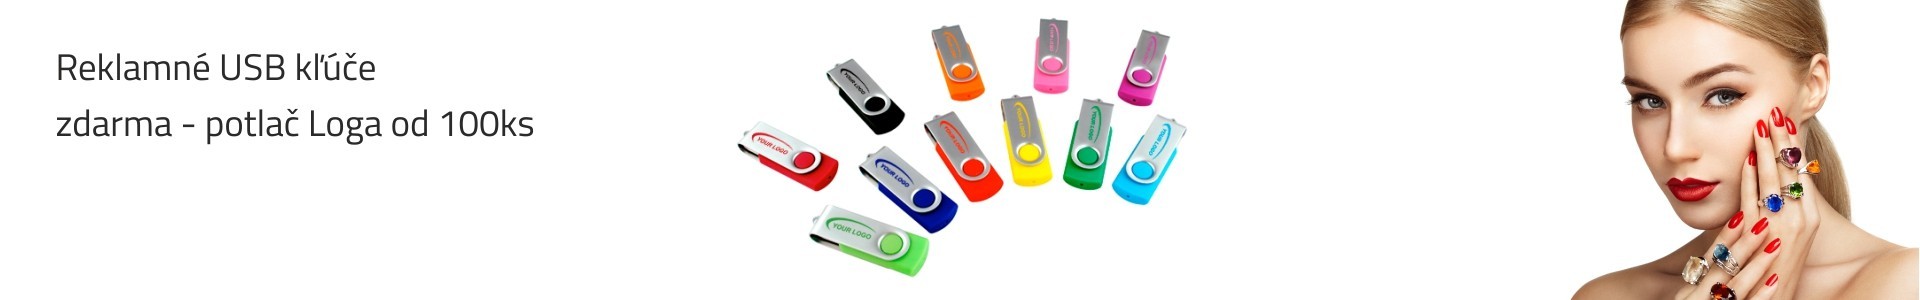 Reklamné USB kľúče s potlačou + Farebná Potlač USB do 3 dní I Pc micro